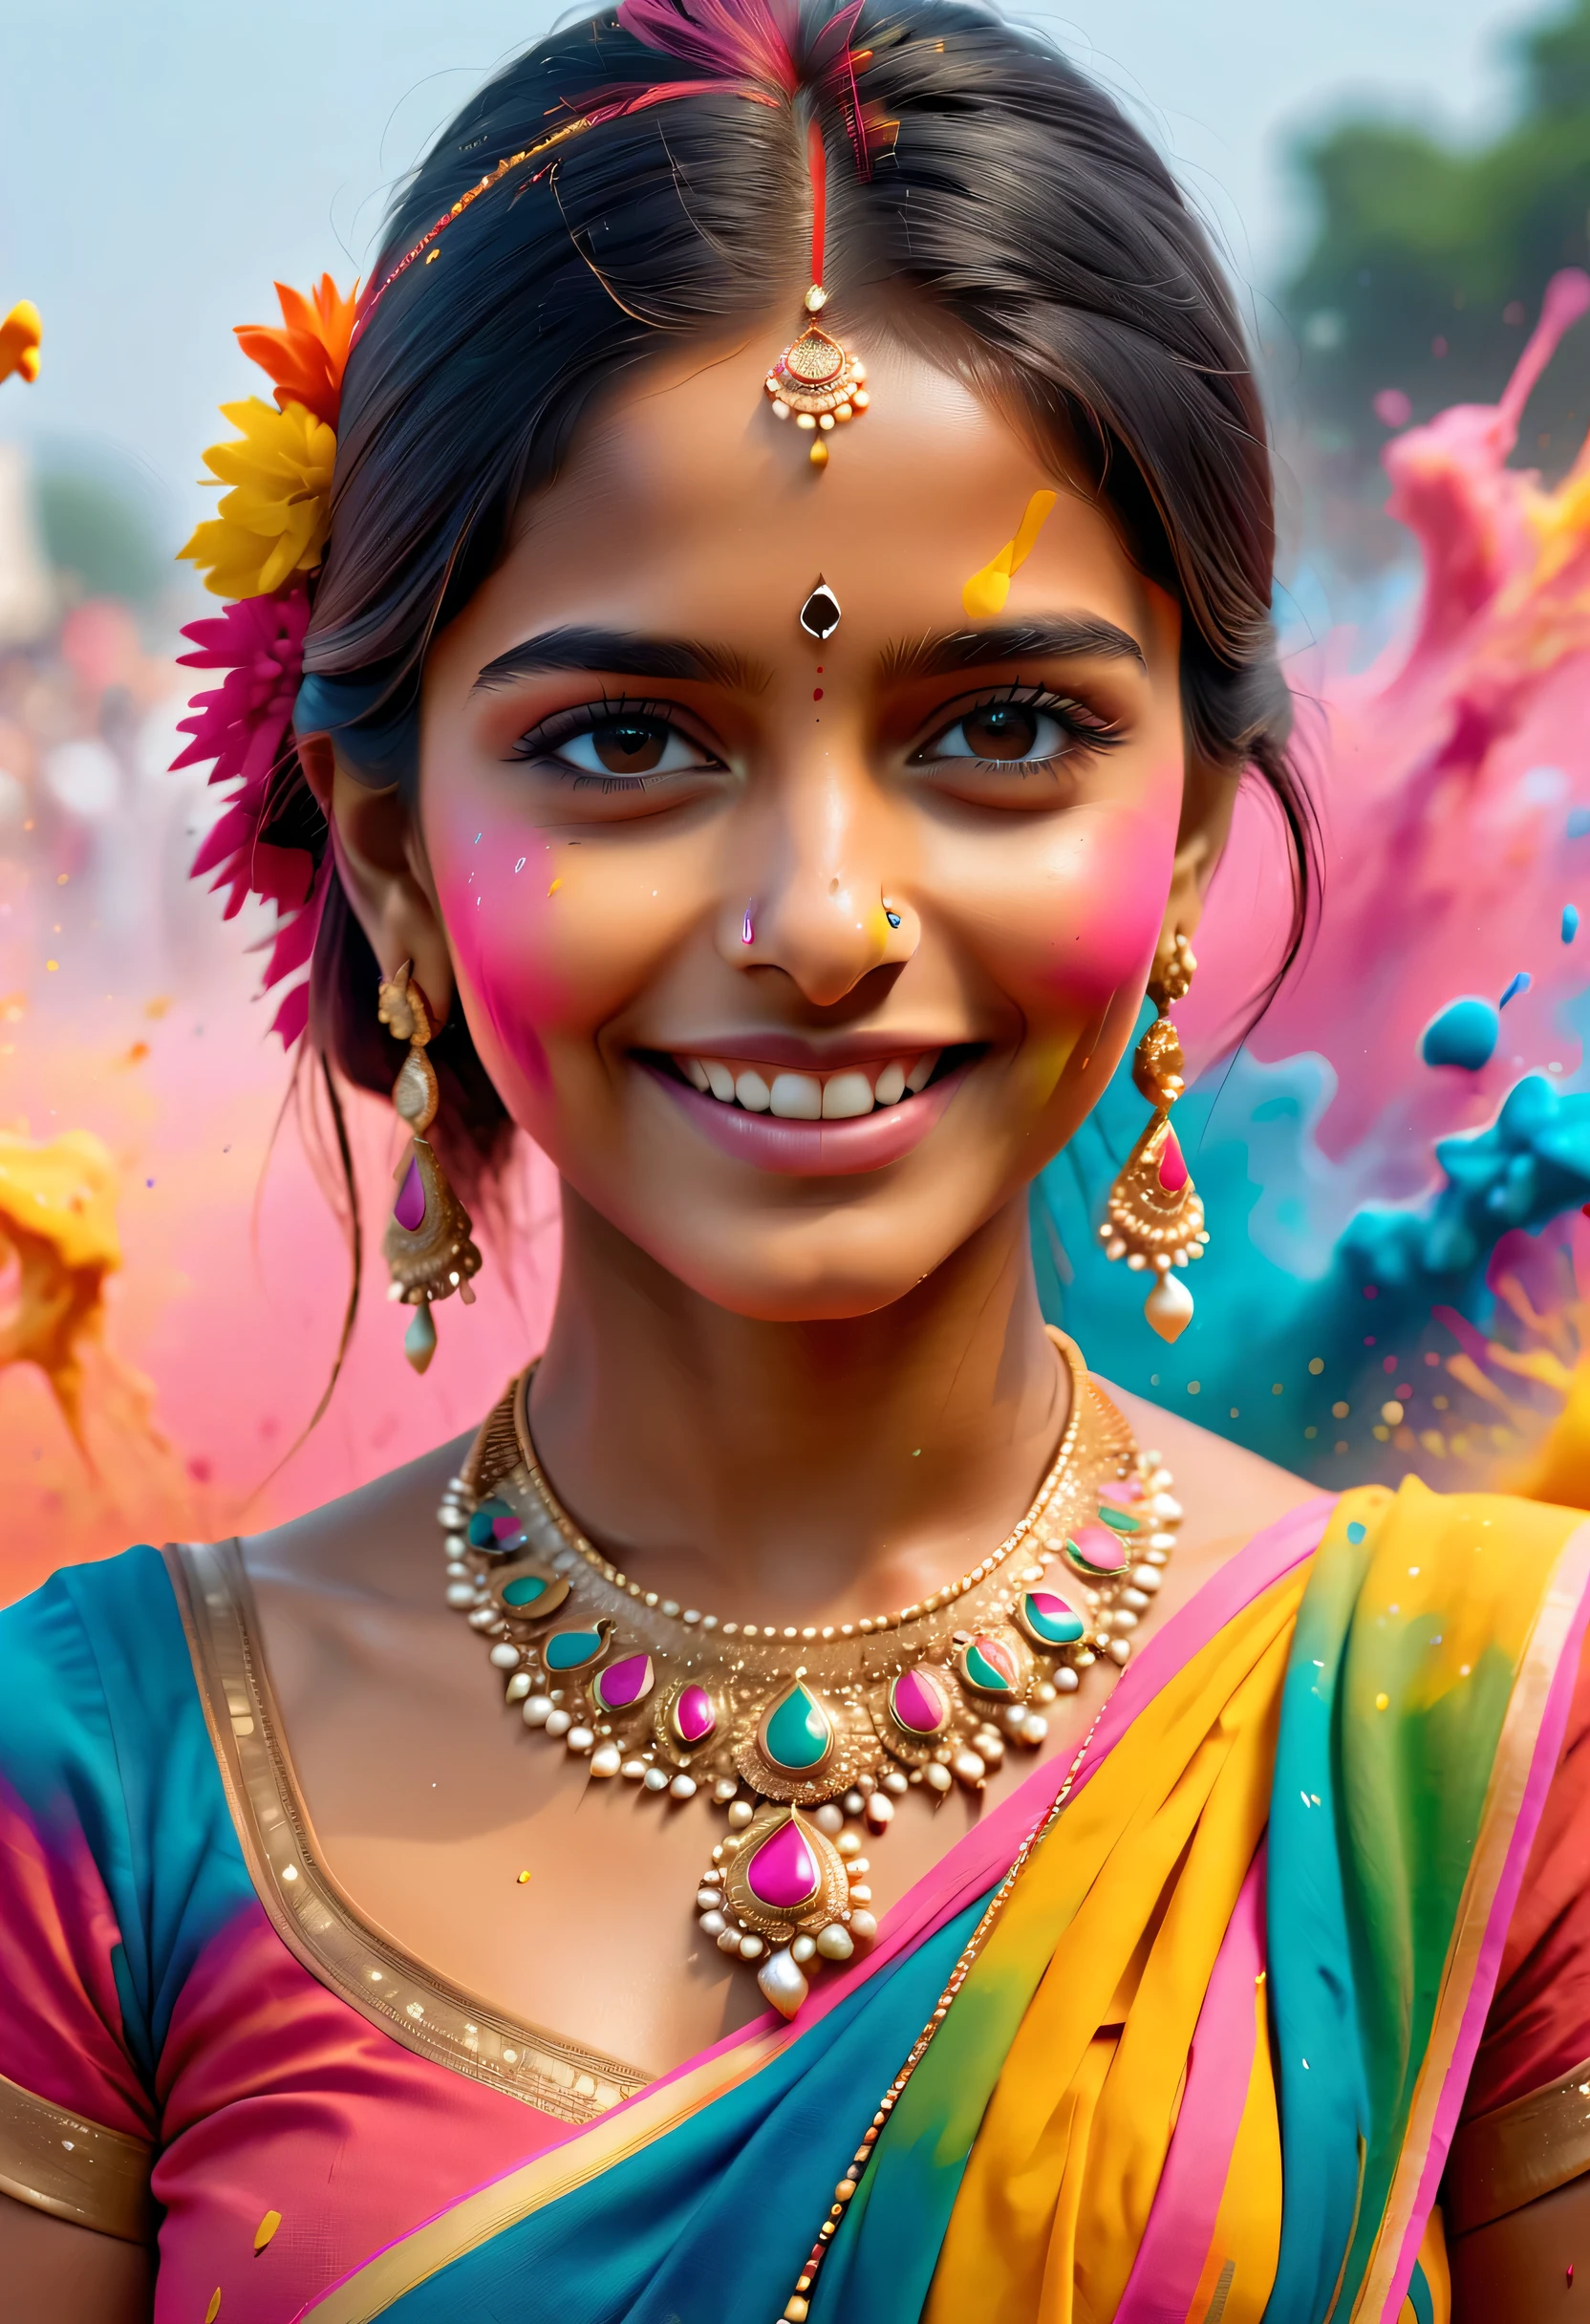 (最佳图像质量，4k,8千，高清，杰作:1.2)，非常详细，(逼真，逼真，逼真:1.37)。印度节日，绘画节，溅出的油漆：1.37.美丽的印度女孩，Face painted with 丰富多彩的 paint，金色的眼睛，精美的黄金首饰，快乐的，幸福，富有感染力的微笑，色彩鲜艳的服装，彩色指甲，身上被溅出的油漆，Splashing 丰富多彩的 paint at the event，油漆飞溅背景，彩色溅出的油漆，充满活力的运动，动感十足、力量十足的抽象艺术，丰富多彩的，丙烯，鲜艳的彩虹色调，幸福活泼的气氛，亮橙色，粉色的，异想天开又梦幻，自发溅射，大胆的色彩对比。